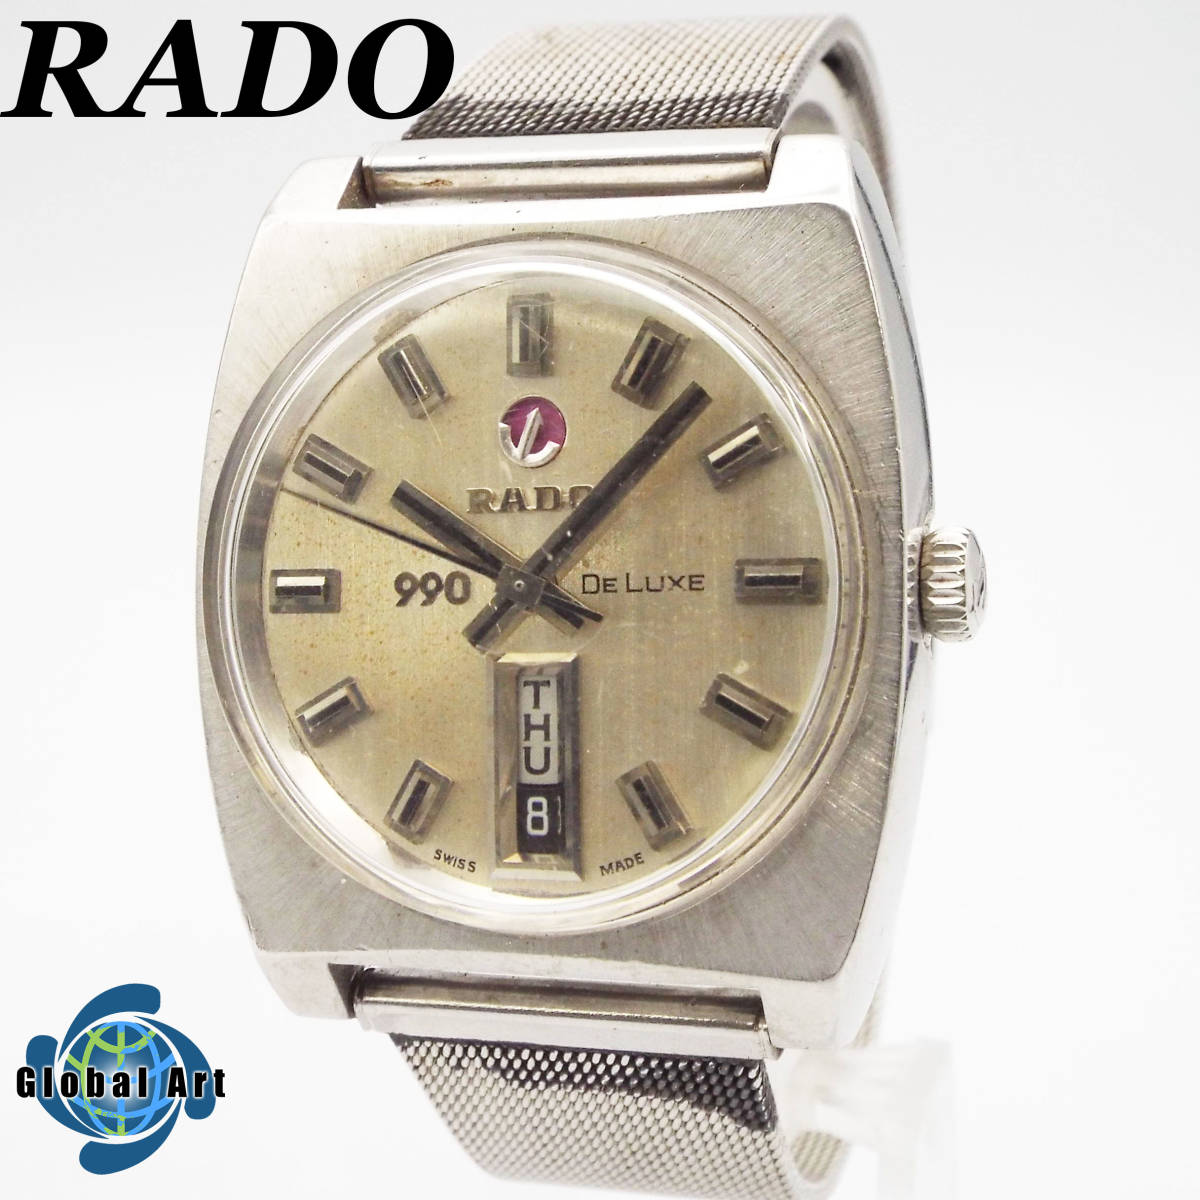 い02485/RADO ラドー/DELUXE デラックス/990/自動巻/メンズ腕時計/デイデイト/文字盤 シルバー/スイス製/11860